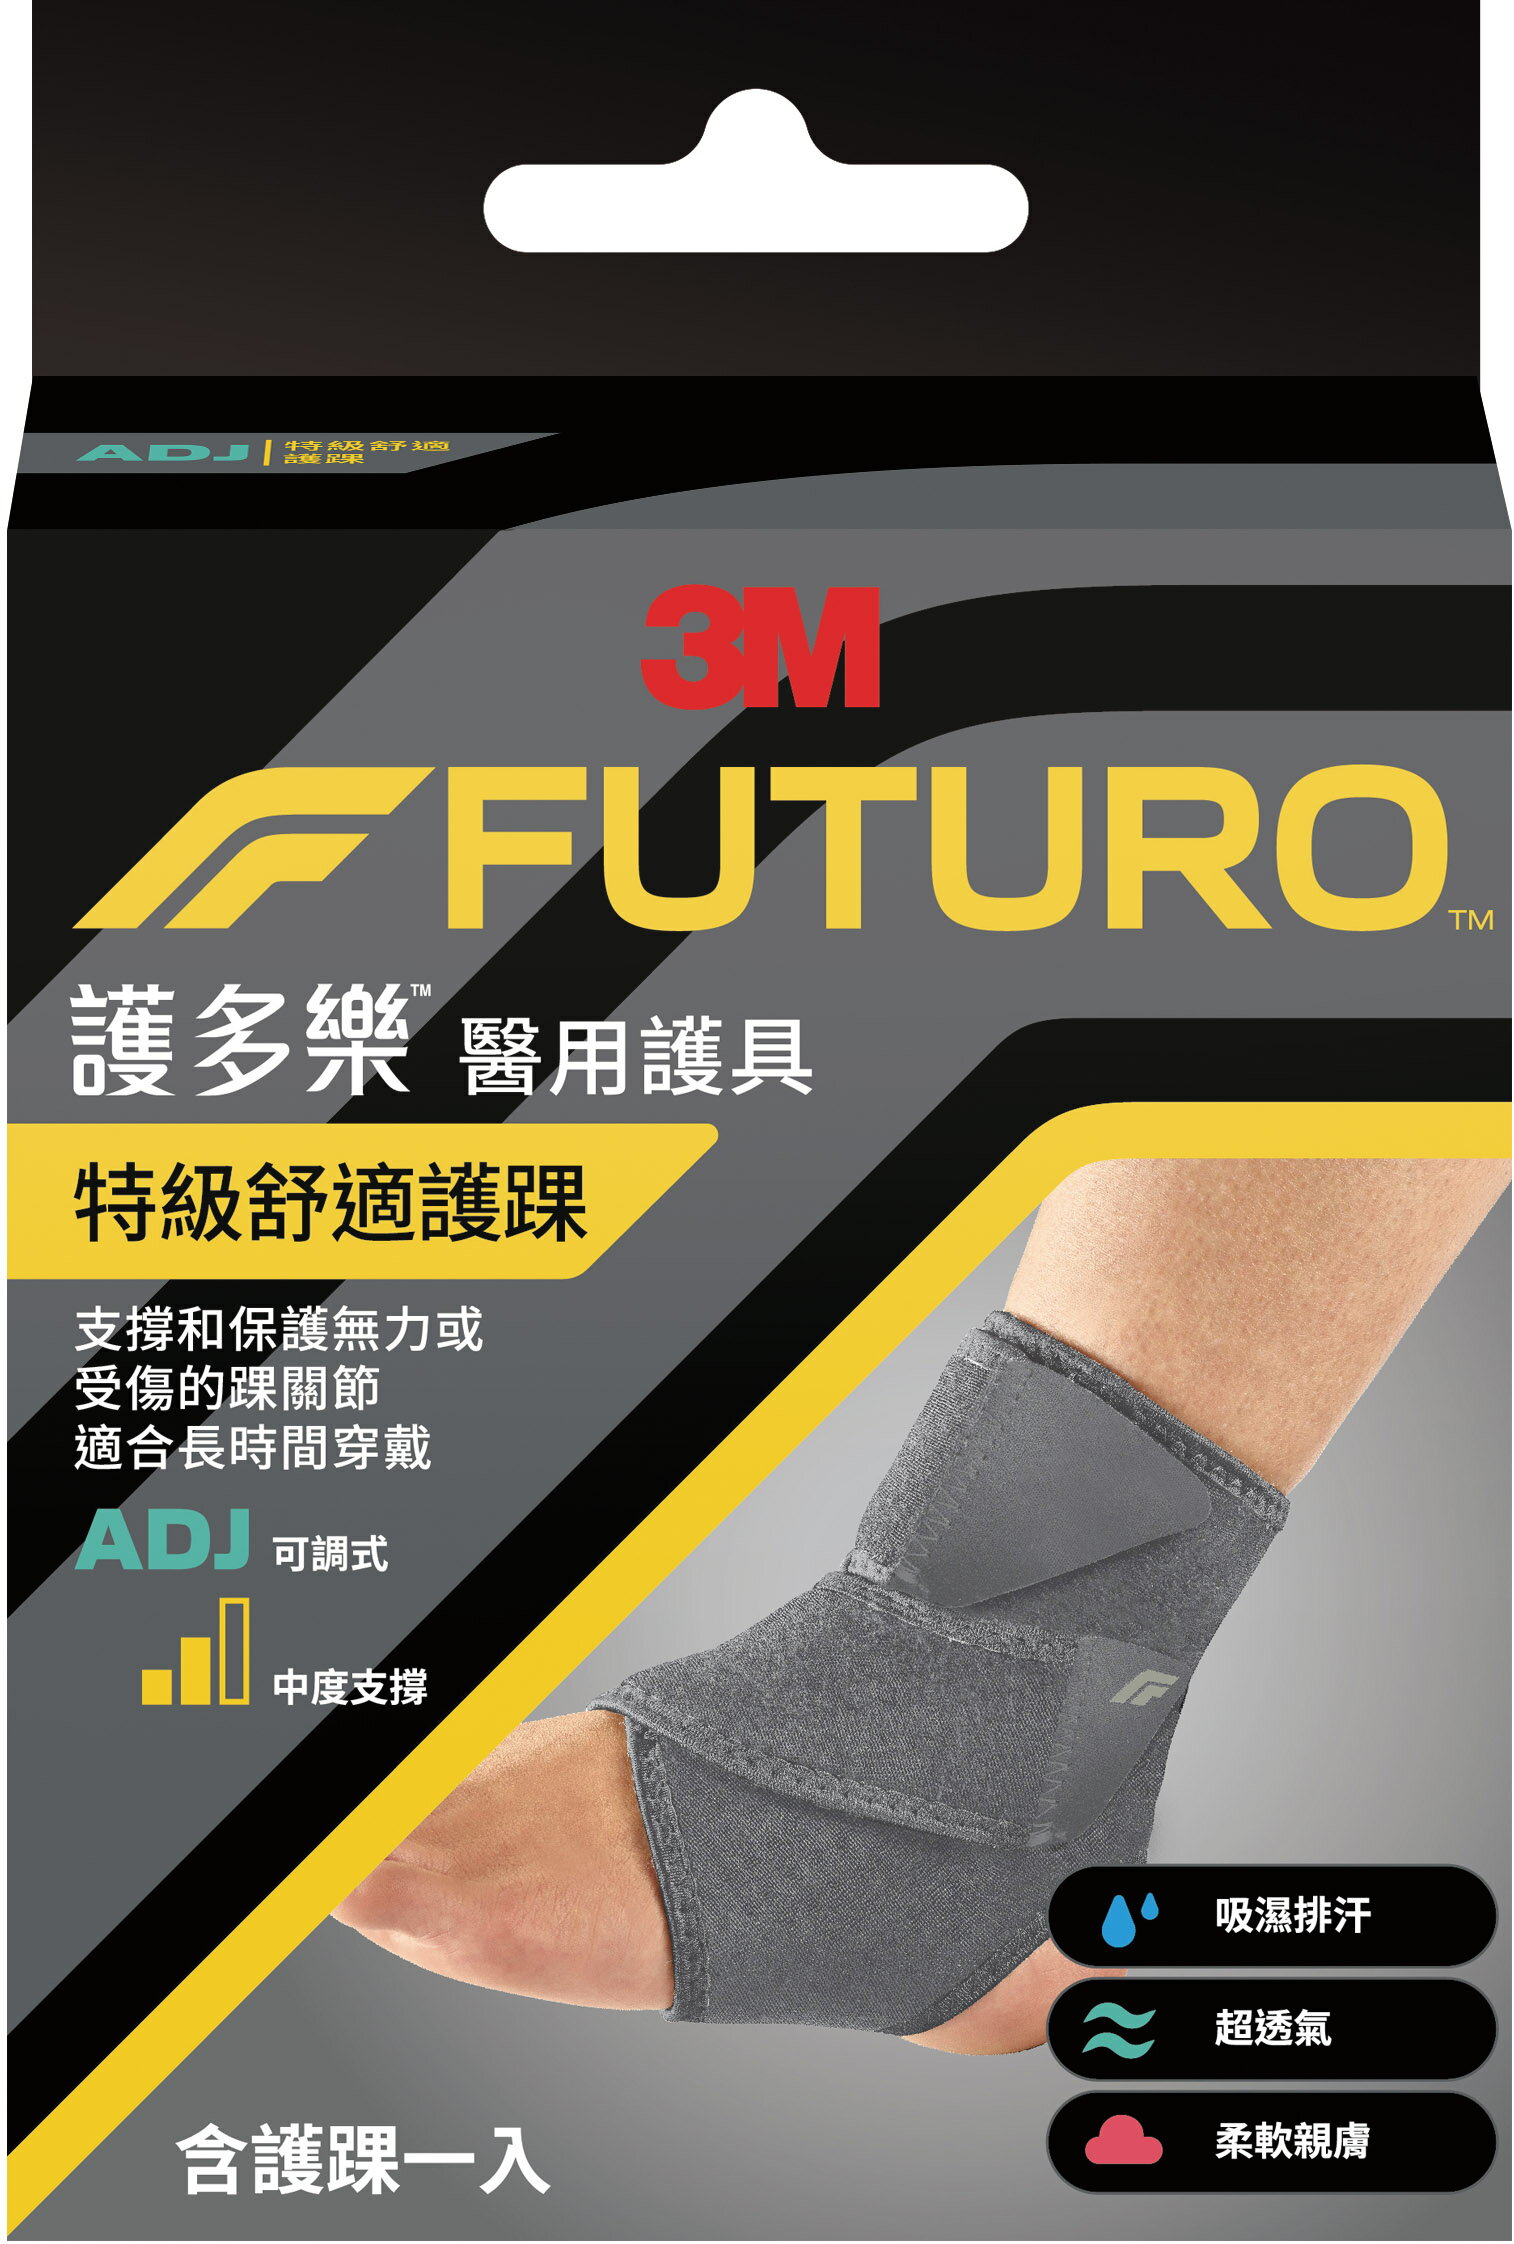 【醫護寶】3M-FUTURO 護多樂 特級舒適護踝 適合長時間穿戴 醫用護具